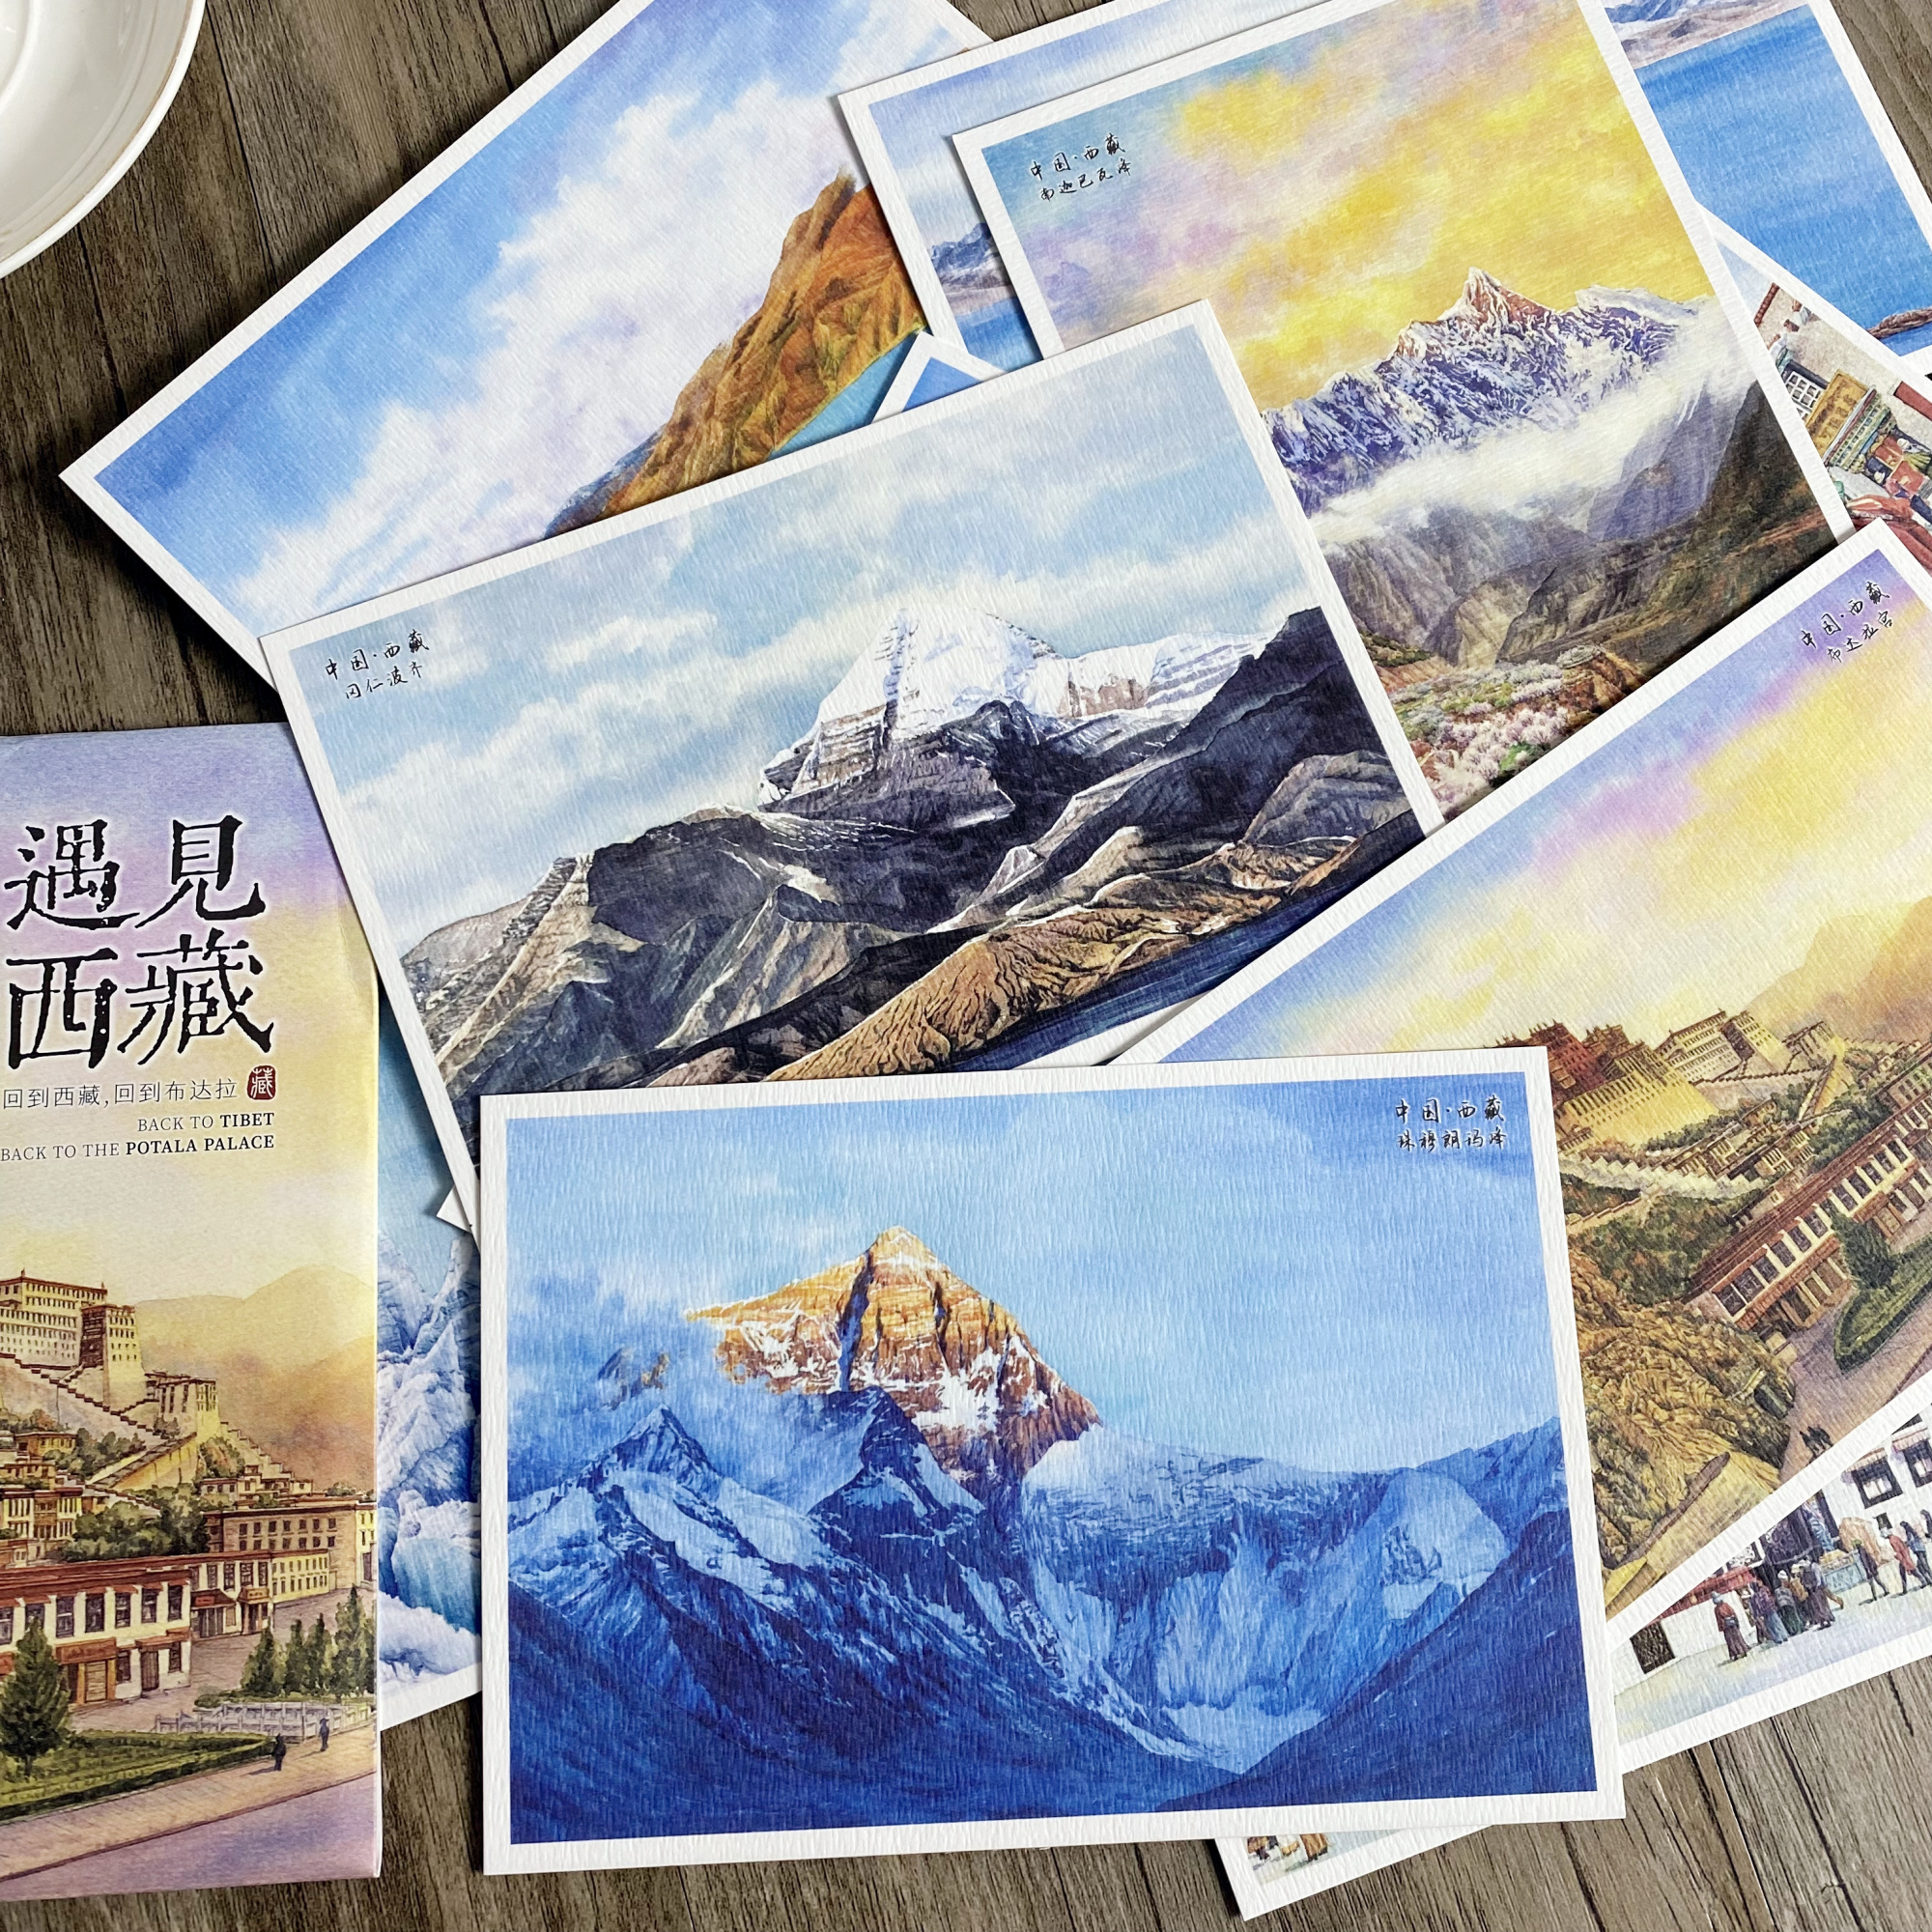 创意旅游明信片手绘西藏卡片著名景点布达拉宫珠穆朗玛峰冈仁波齐